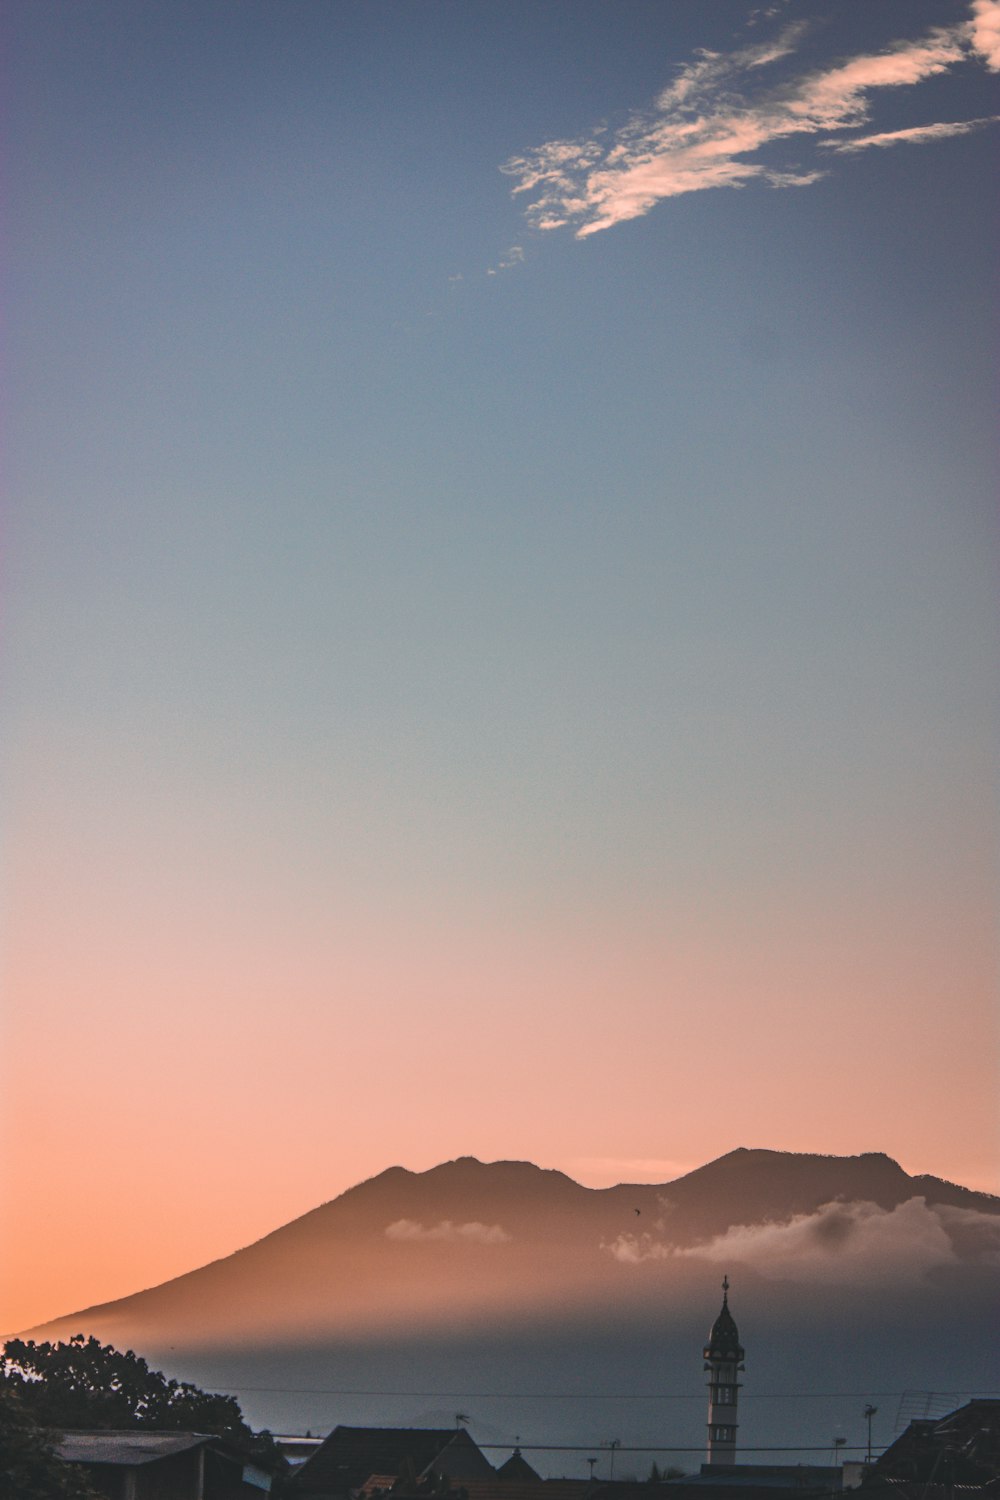 silueta de las montañas durante la puesta de sol